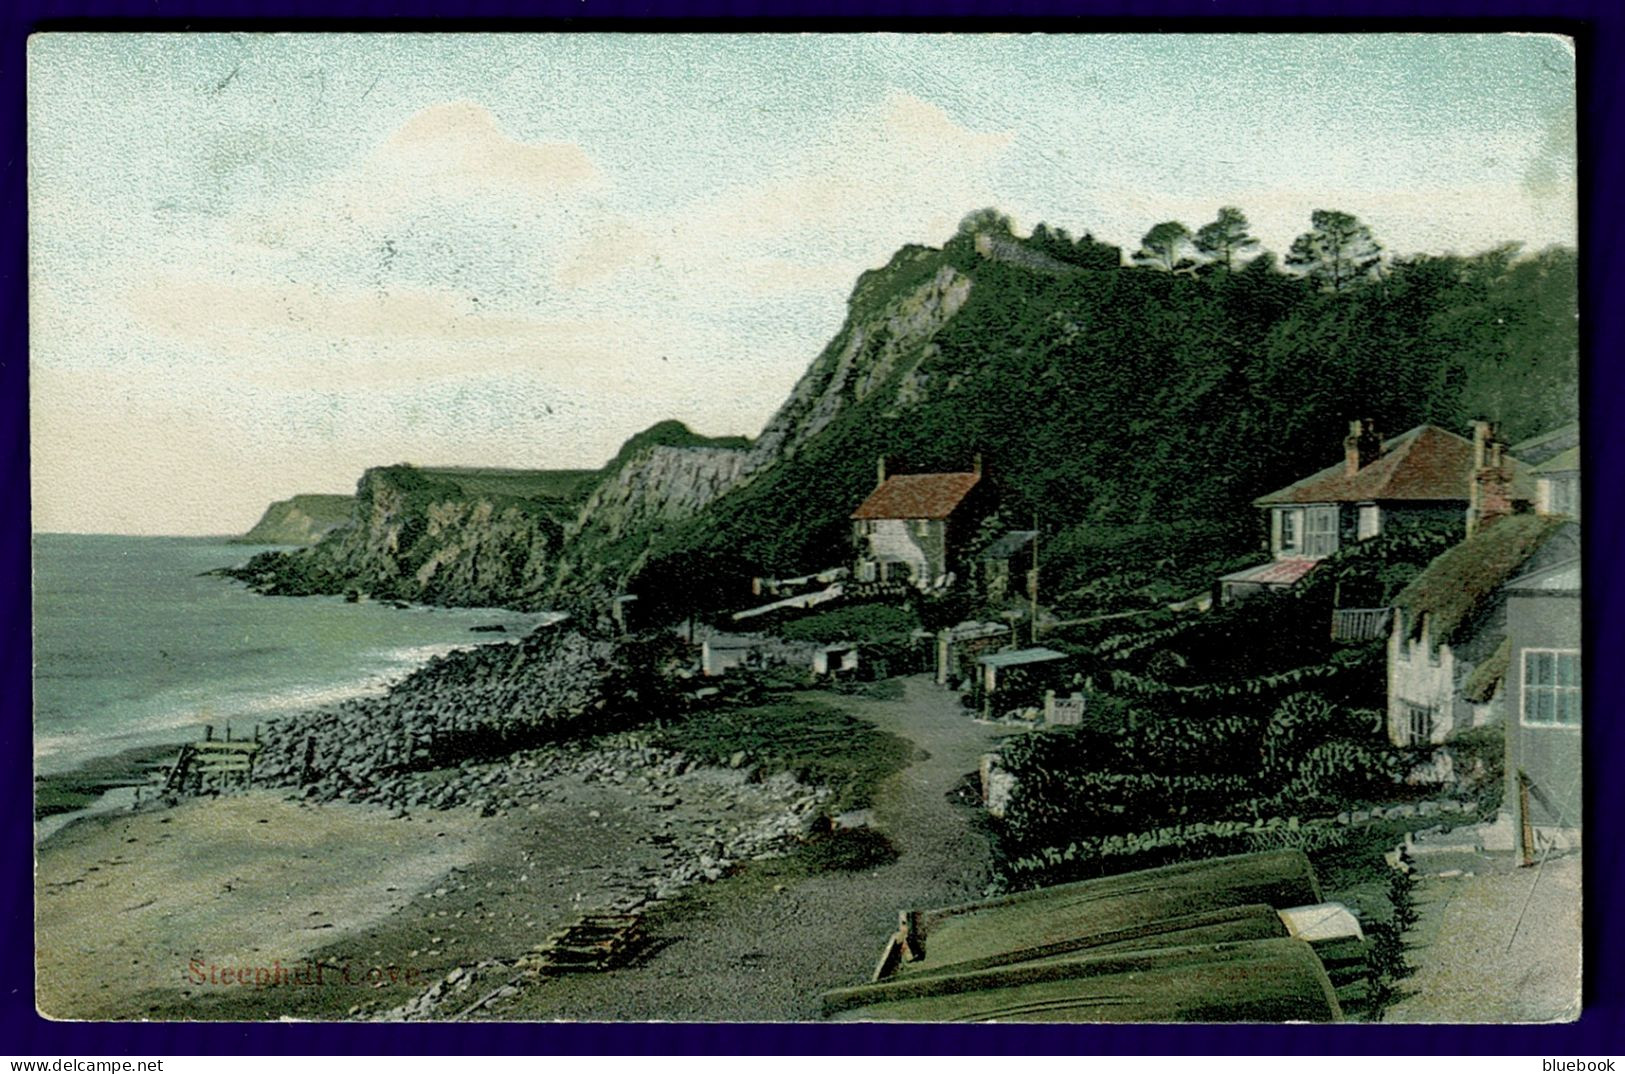 RB 1633 - 1910 Postcard - Steephill Cove Ventnor Isle Of Wight - Ventnor